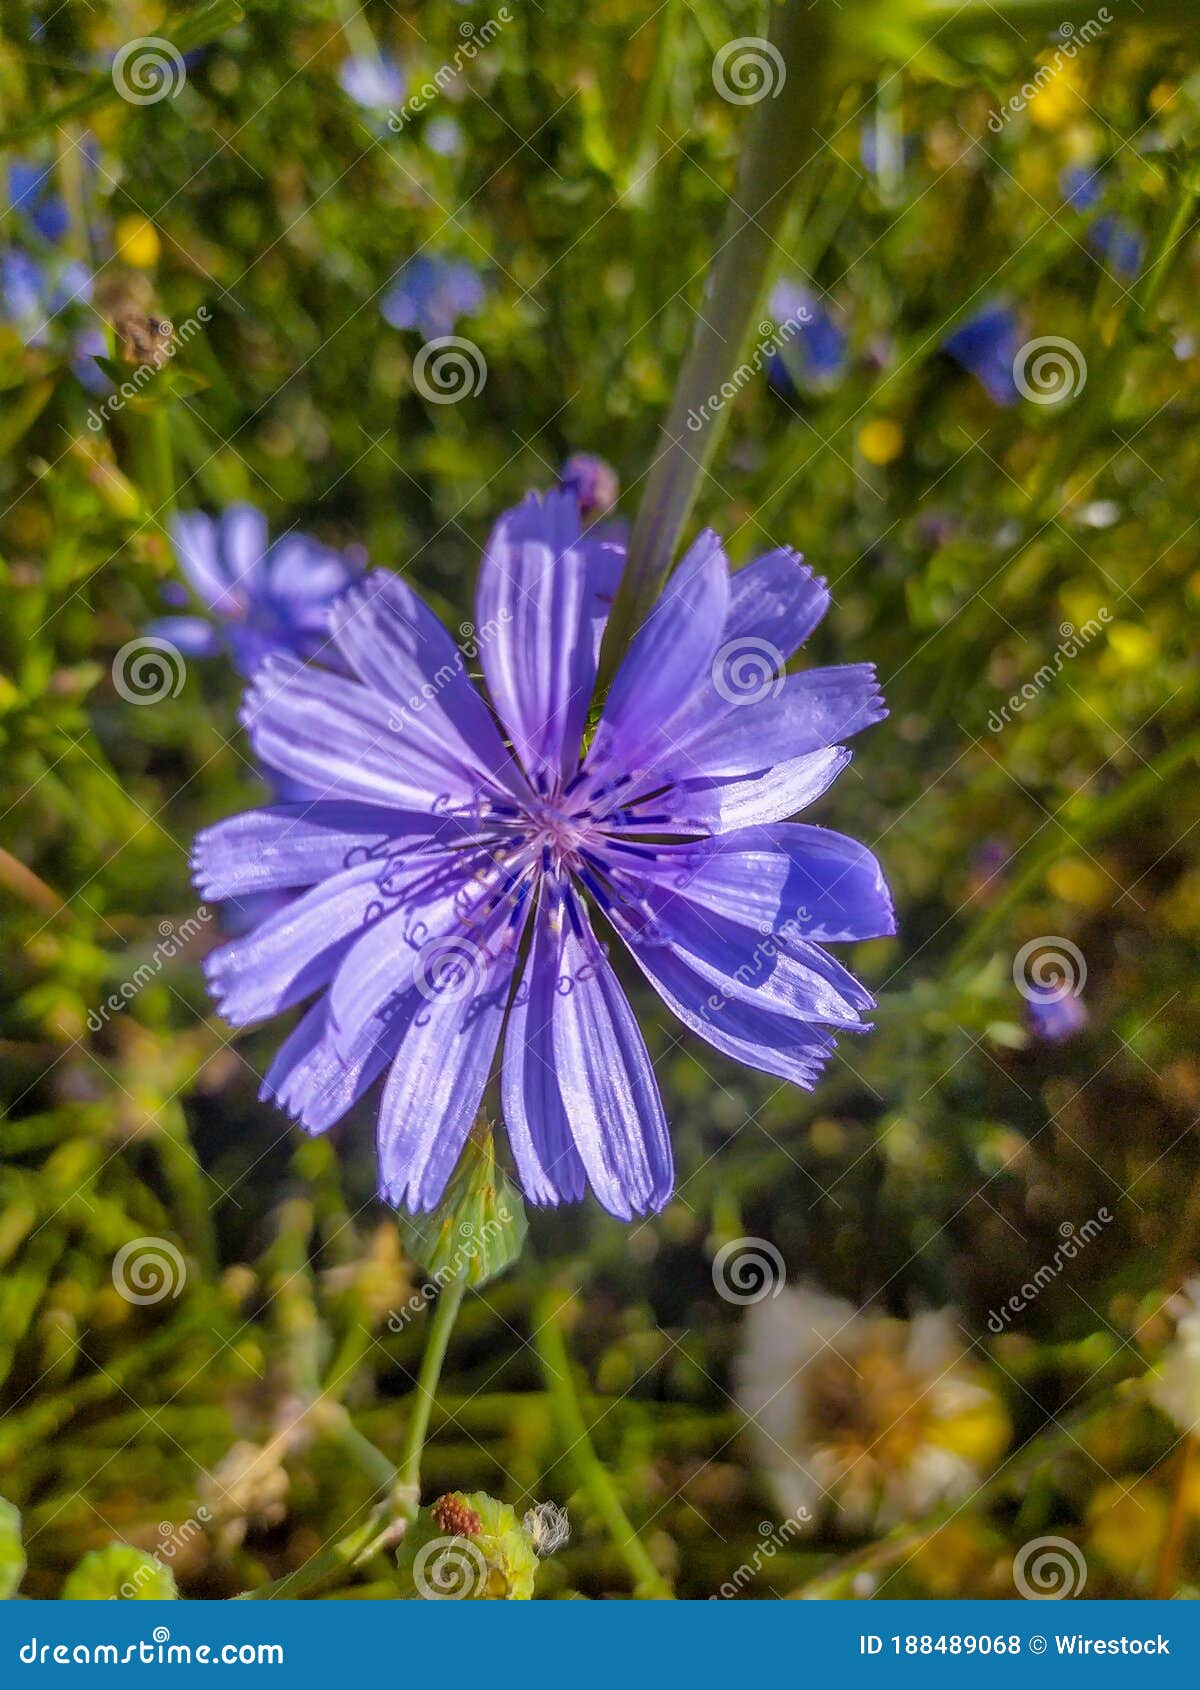 苦苣生茯美丽的蓝色花在绿草背景的 库存图片. 图片 包括有 开花, 自然, 夏令时, 植物群, 花瓣, 春天 - 115002413